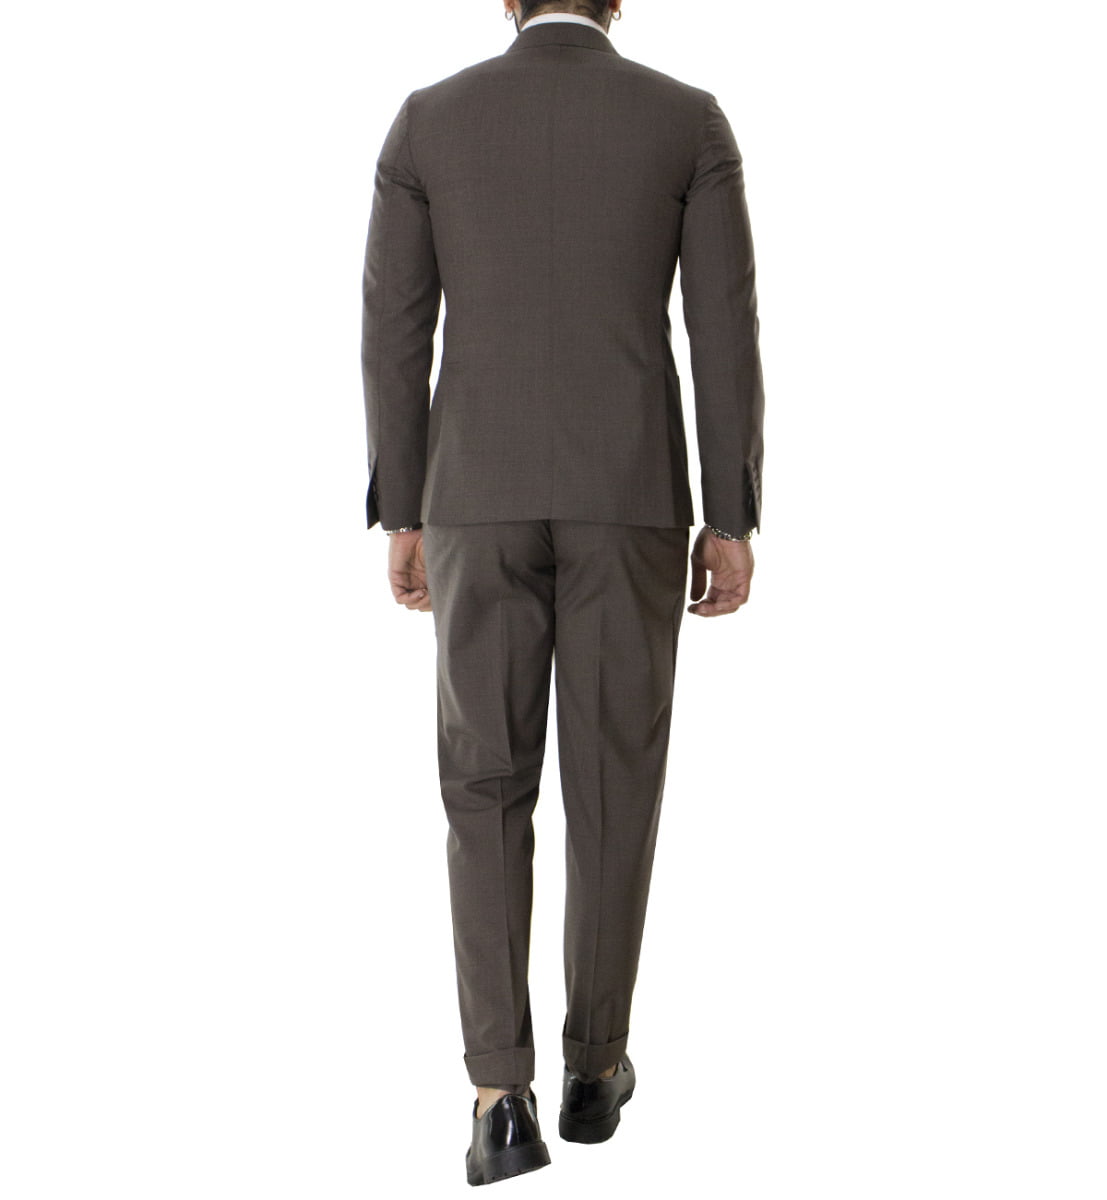 Pantalone uomo marrone vita alta fresco lana con pinces fibbie laterali e risvolto 4cm